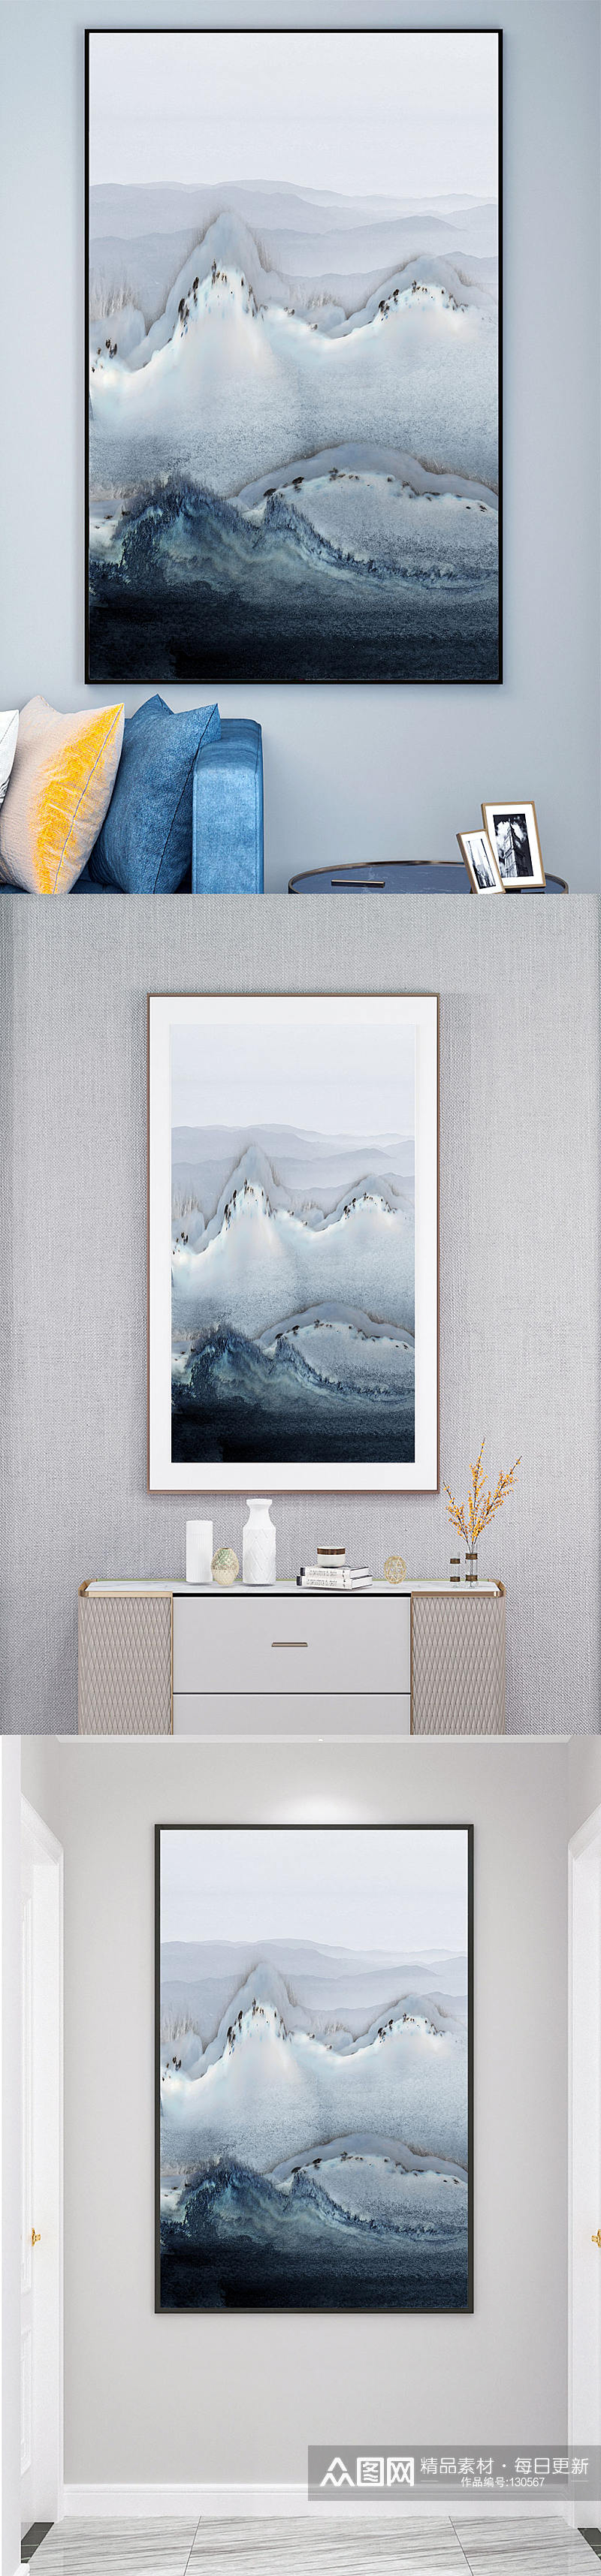 新中式山水风景画无框画素材